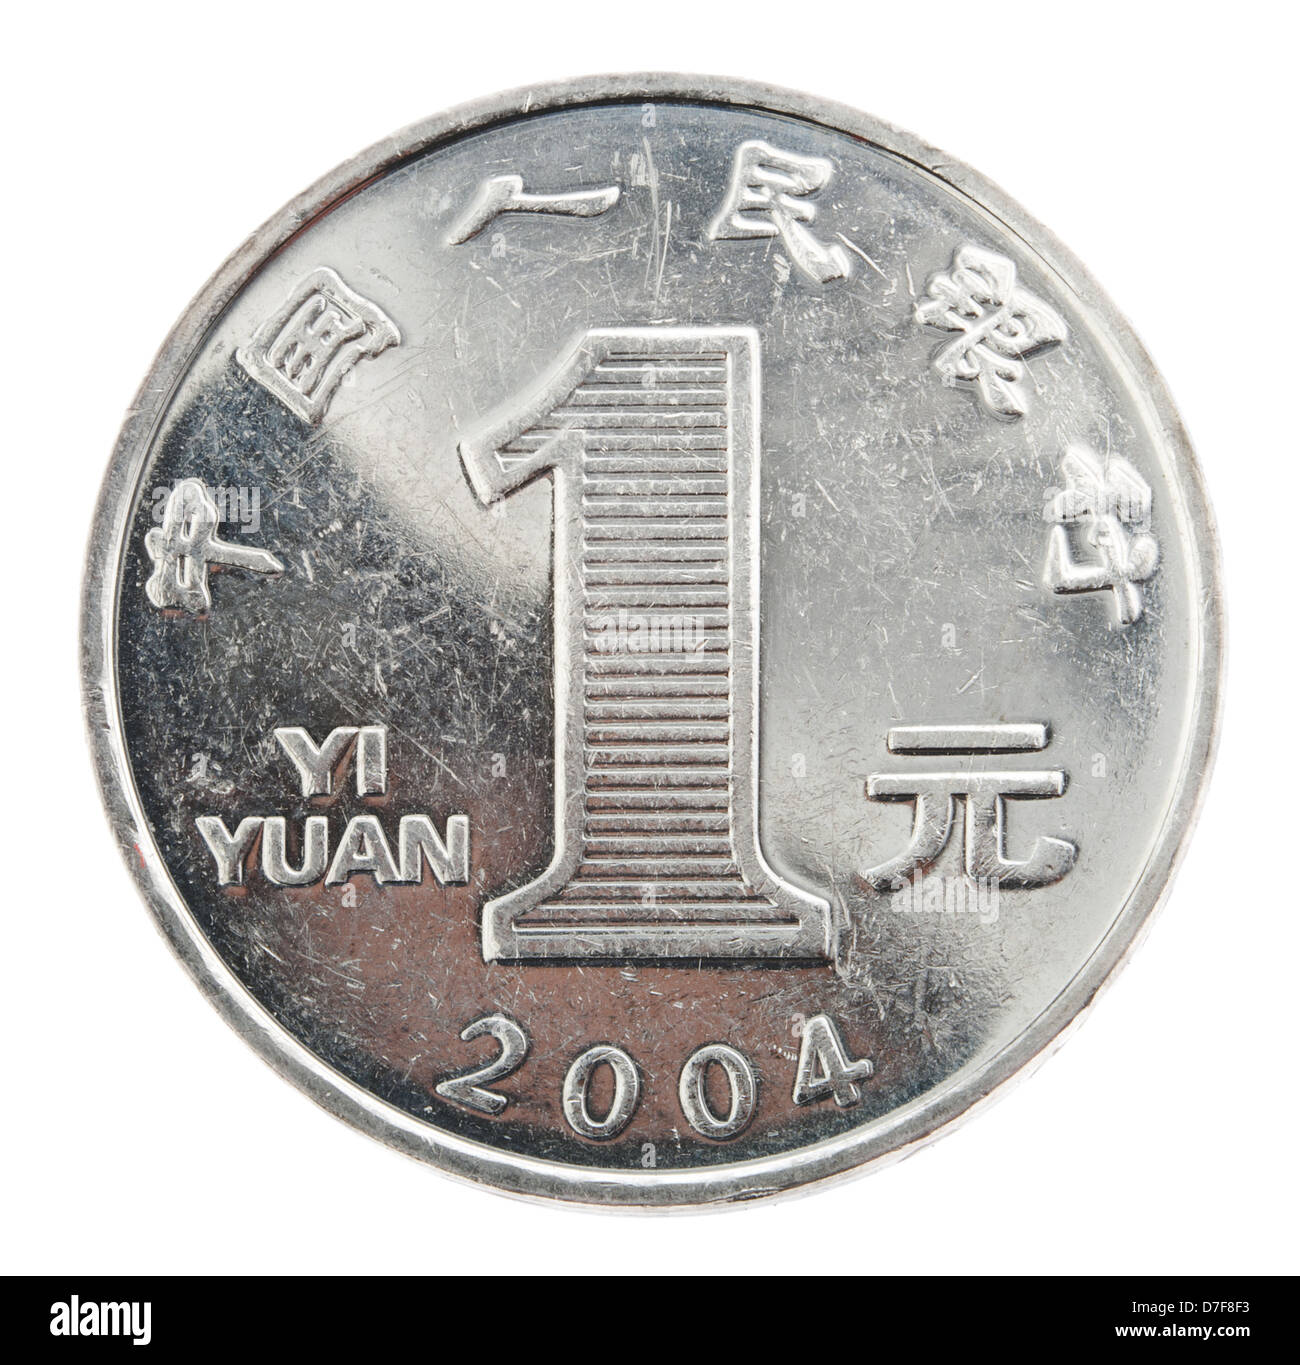 Vue frontale arrière (queues) côté 1 yuan chinois (¥) pièce de monnaie frappées en 2004. Année dénomination représenté est la frappe. Isolé sur Banque D'Images